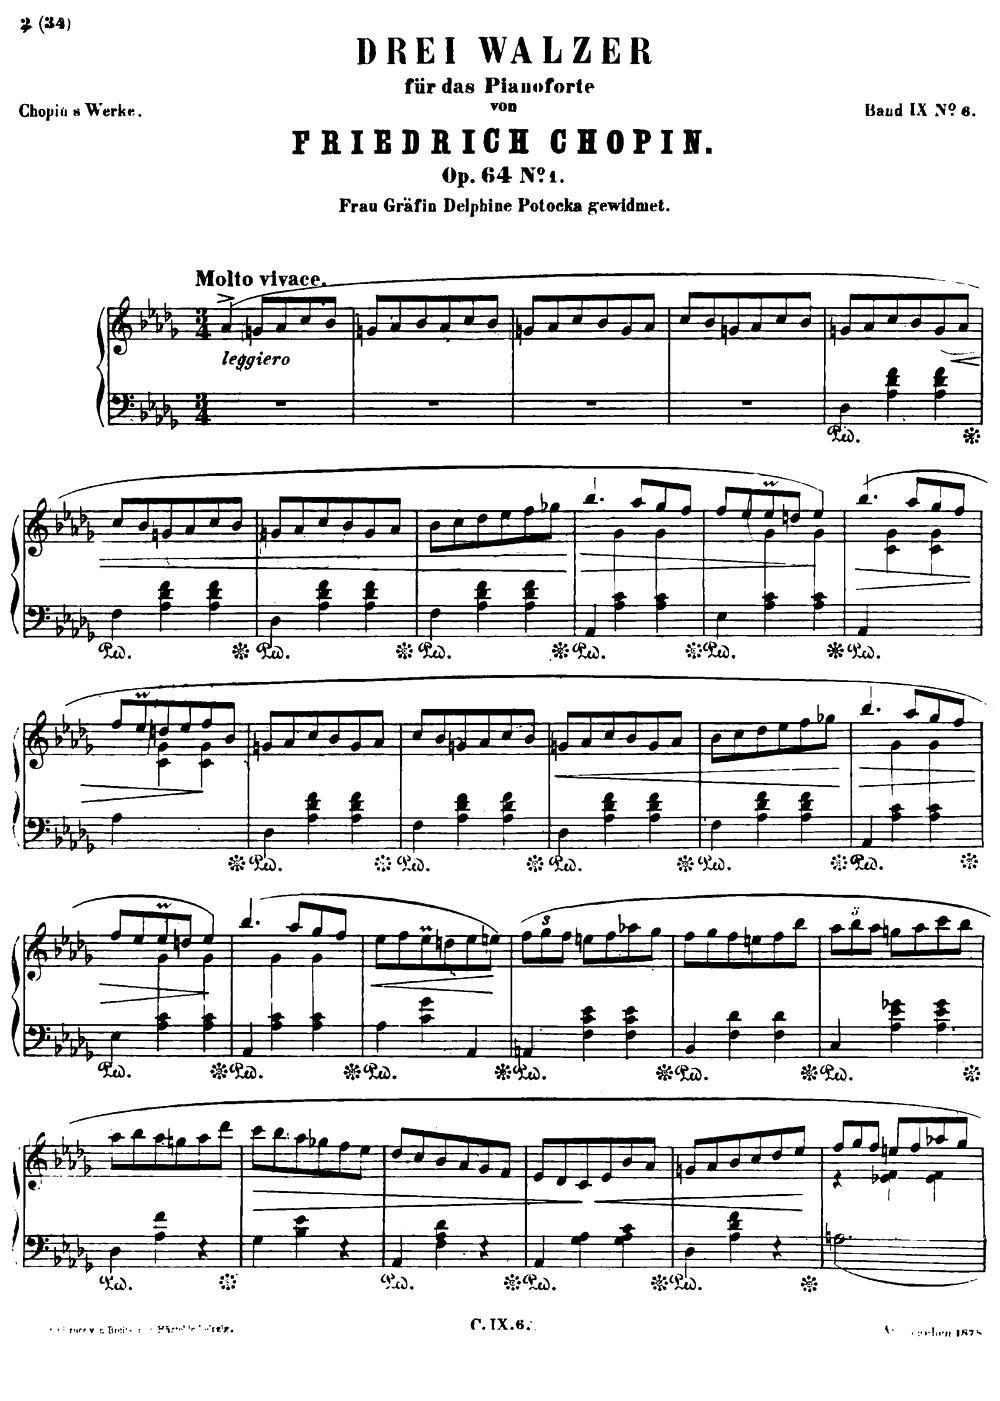 《DREI WALZER》钢琴曲谱图分享